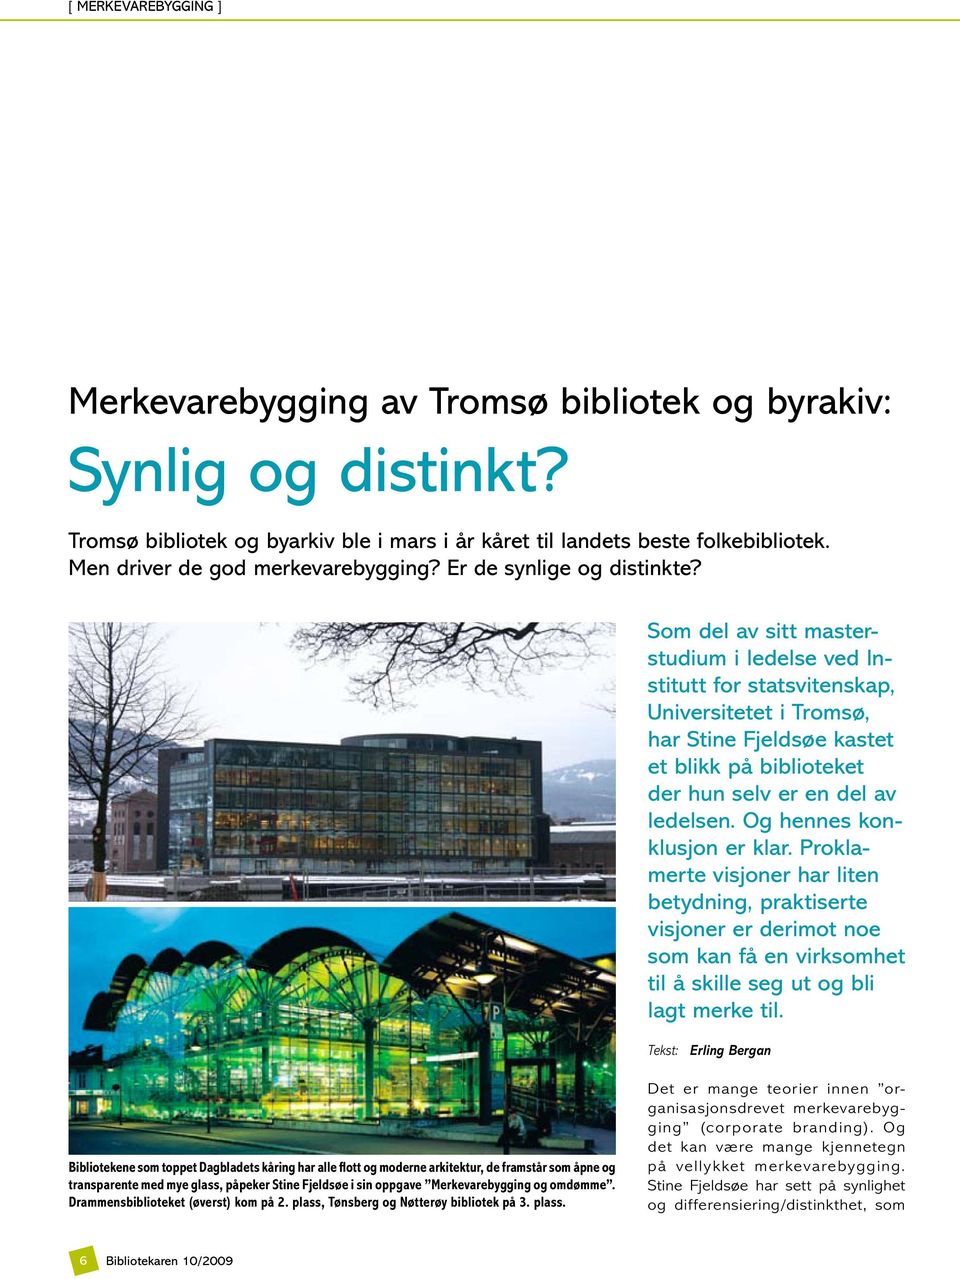 Som del av sitt masterstudium i ledelse ved Institutt for statsvitenskap, Universitetet i Tromsø, har Stine Fjeldsøe kastet et blikk på biblioteket der hun selv er en del av ledelsen.